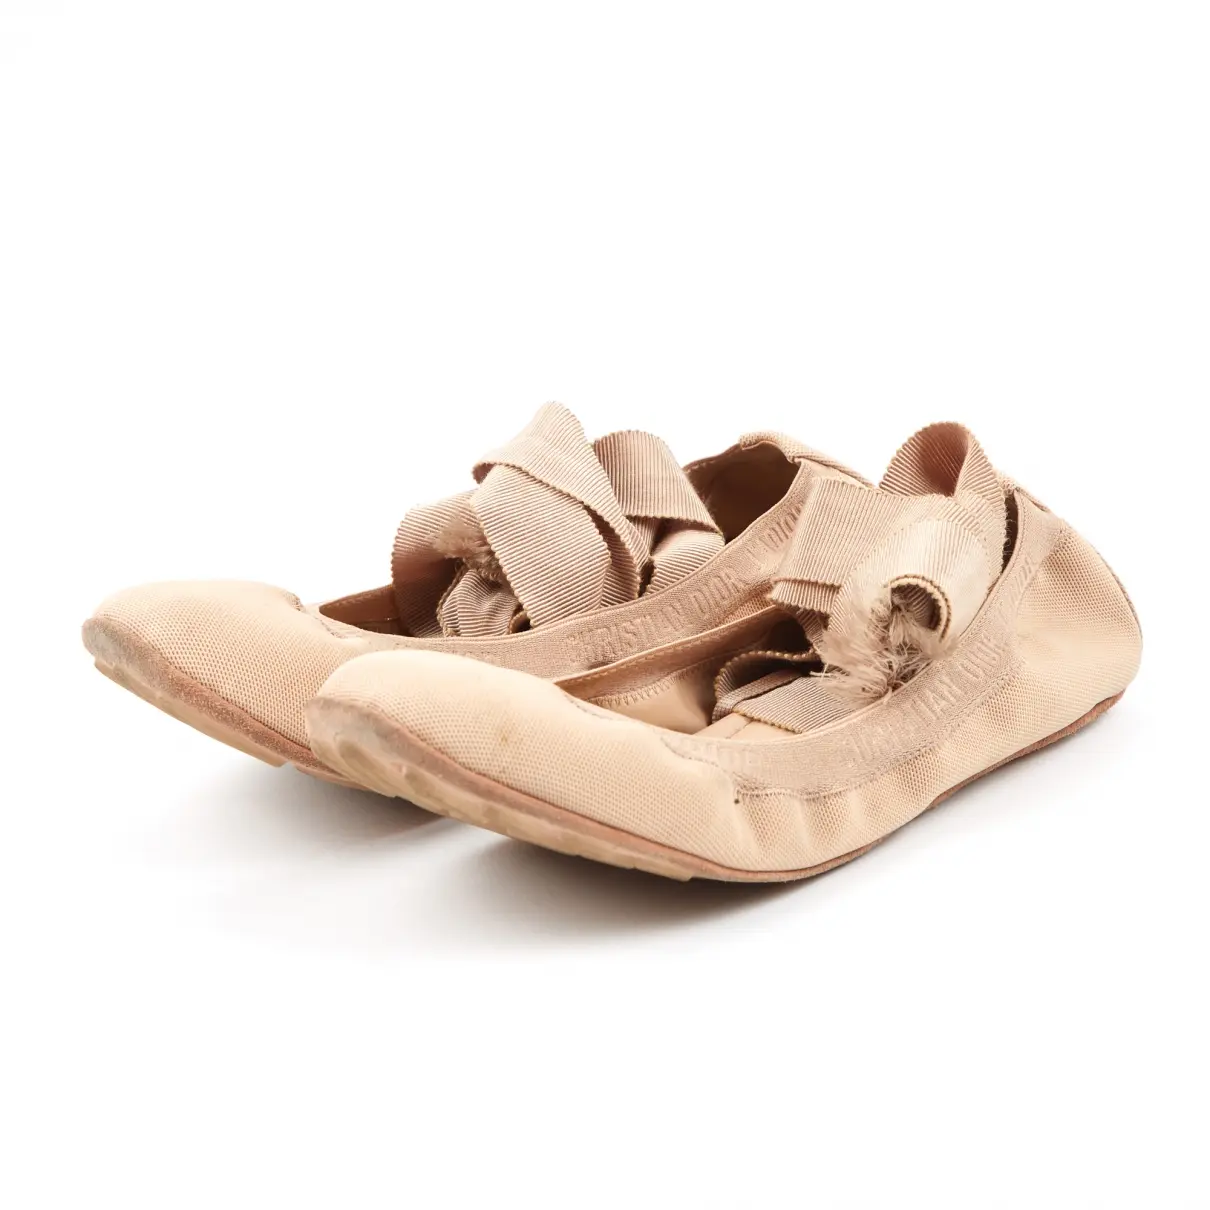 Dior J'adior cloth ballet flats for sale